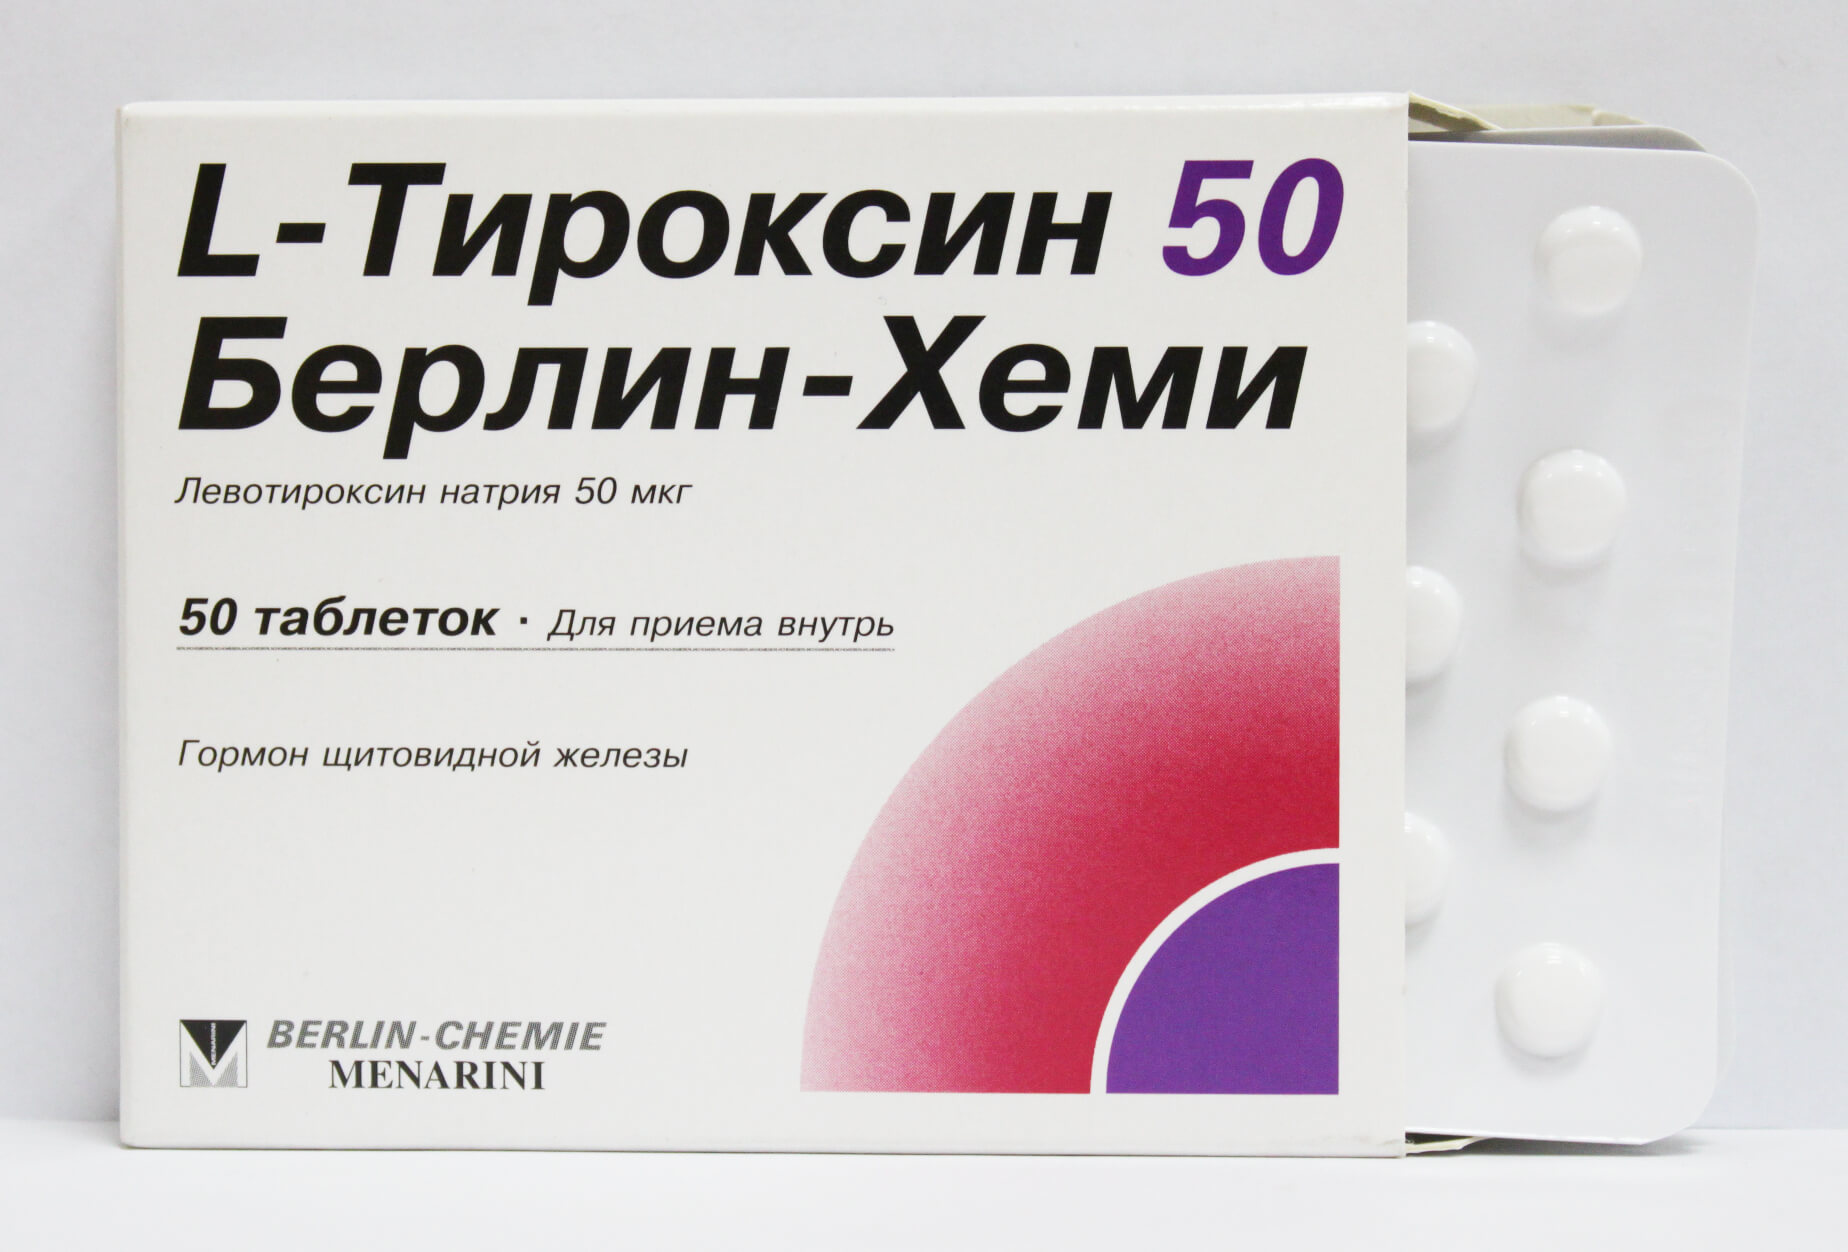 Симптомы передозировки Л-тироксином и побочные действия препарата